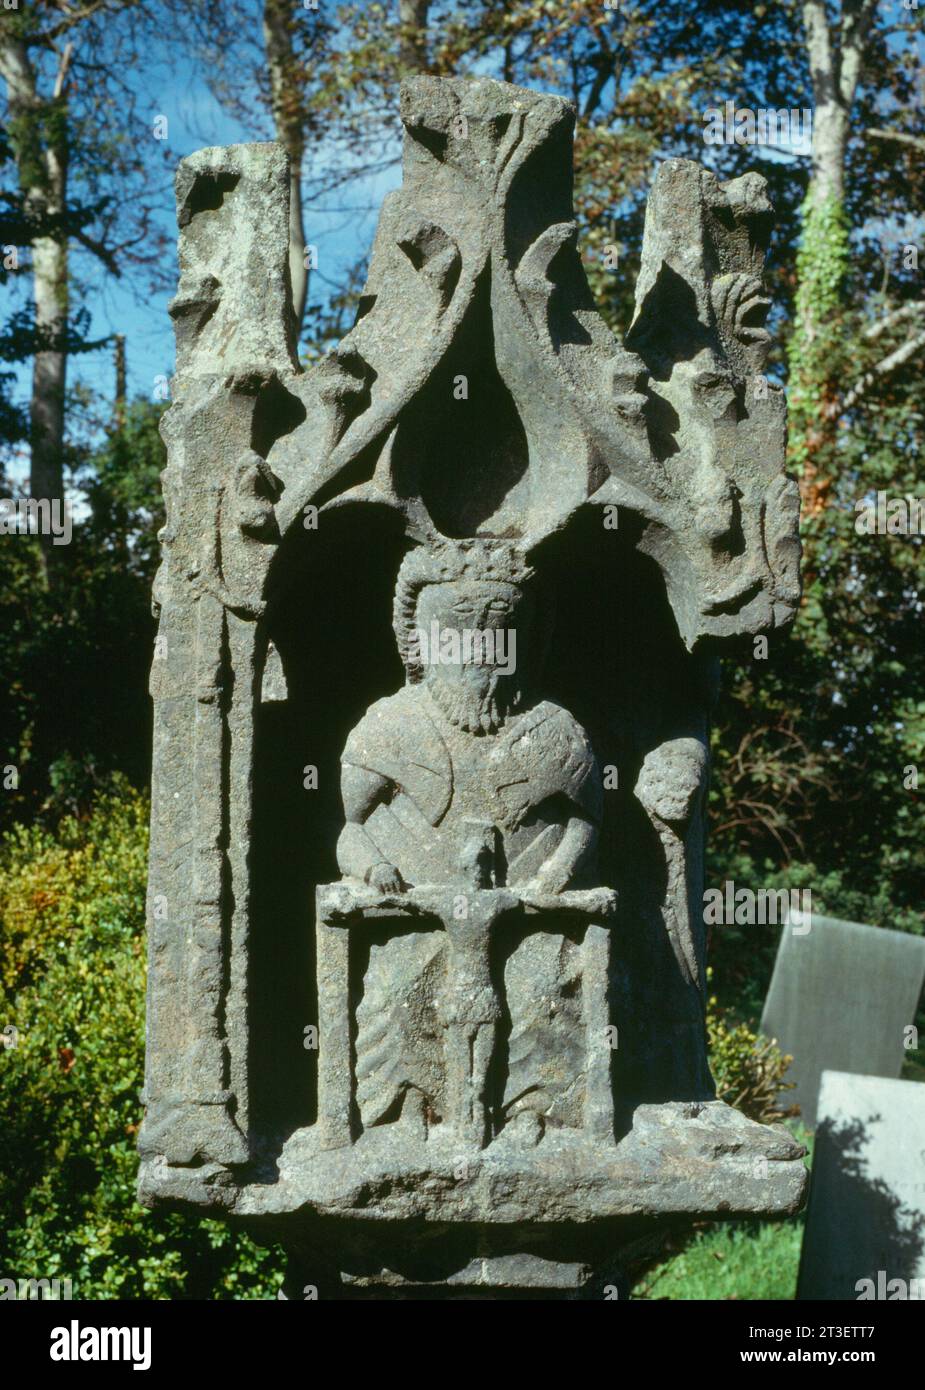 Une Trinité sur la face se d'une croix de lanterne du début du C15ème (c 1420) près du porche de l'église St Nicholas, St Mawgan-in-Pydar, Cornouailles, Angleterre, Royaume-Uni. Banque D'Images